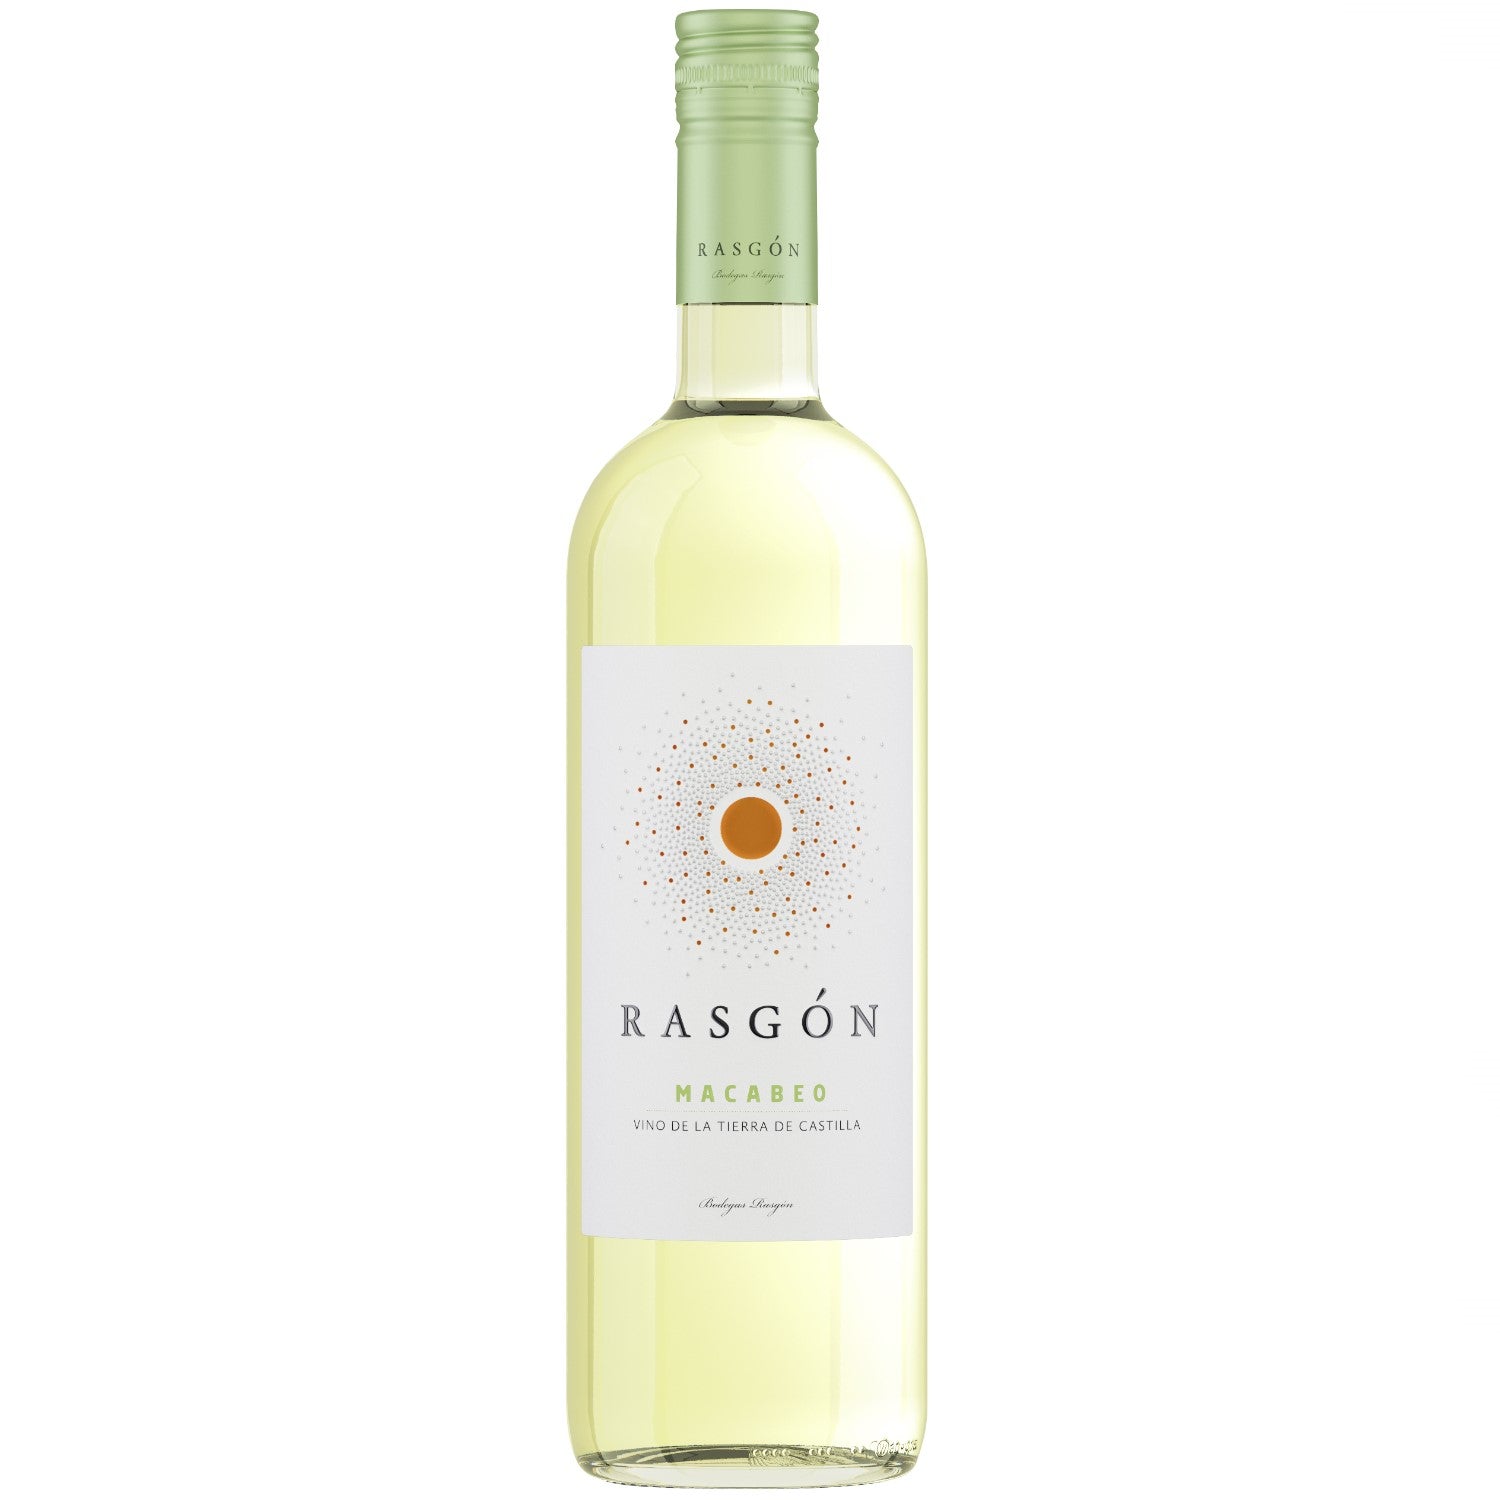 Rason Macabeo Weißwein Wein halbtrocken Spanien (3 x 0.75l) - Versanel -